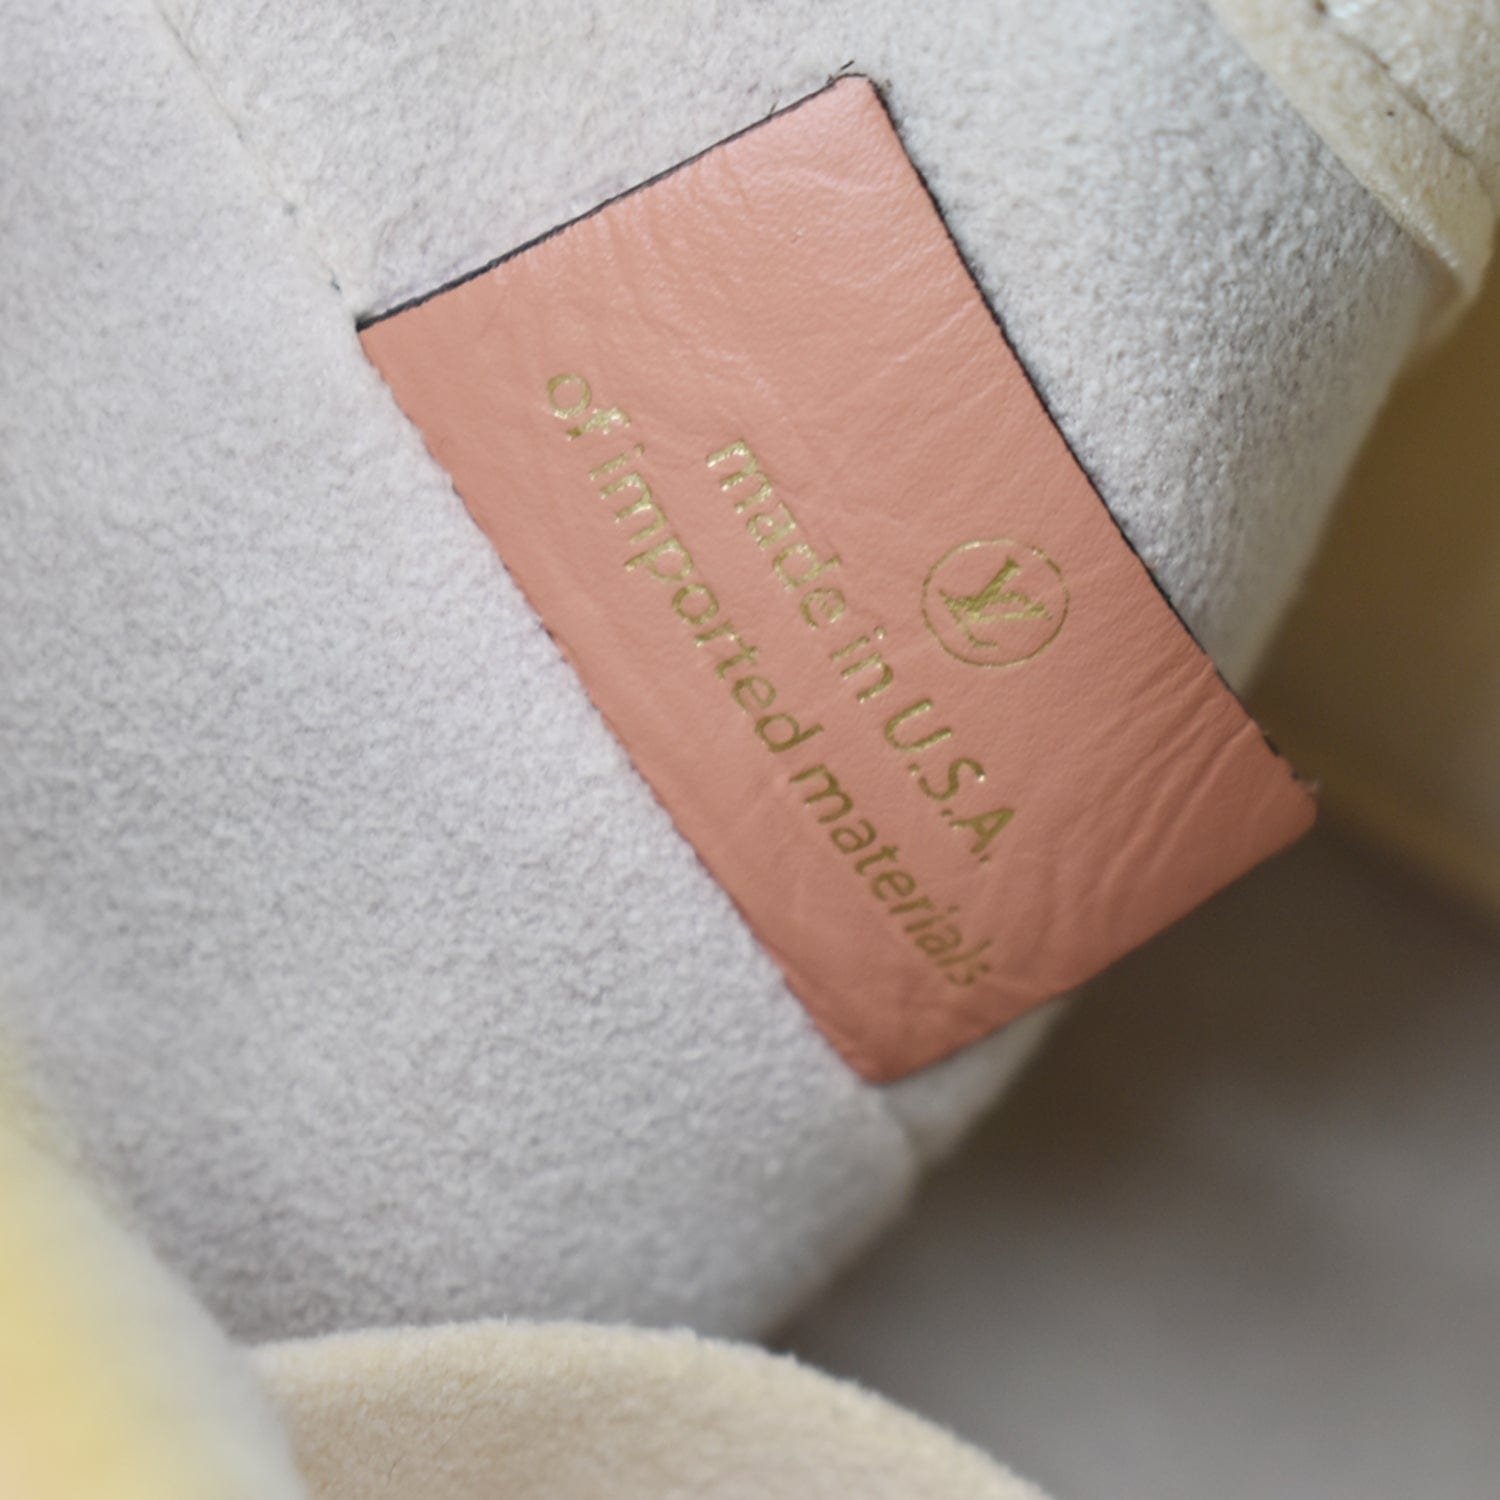 Authenticated Used Louis Vuitton Comme des Garçons Monogram Sac de Poche  Shoulder Bag Collaboration Limited 